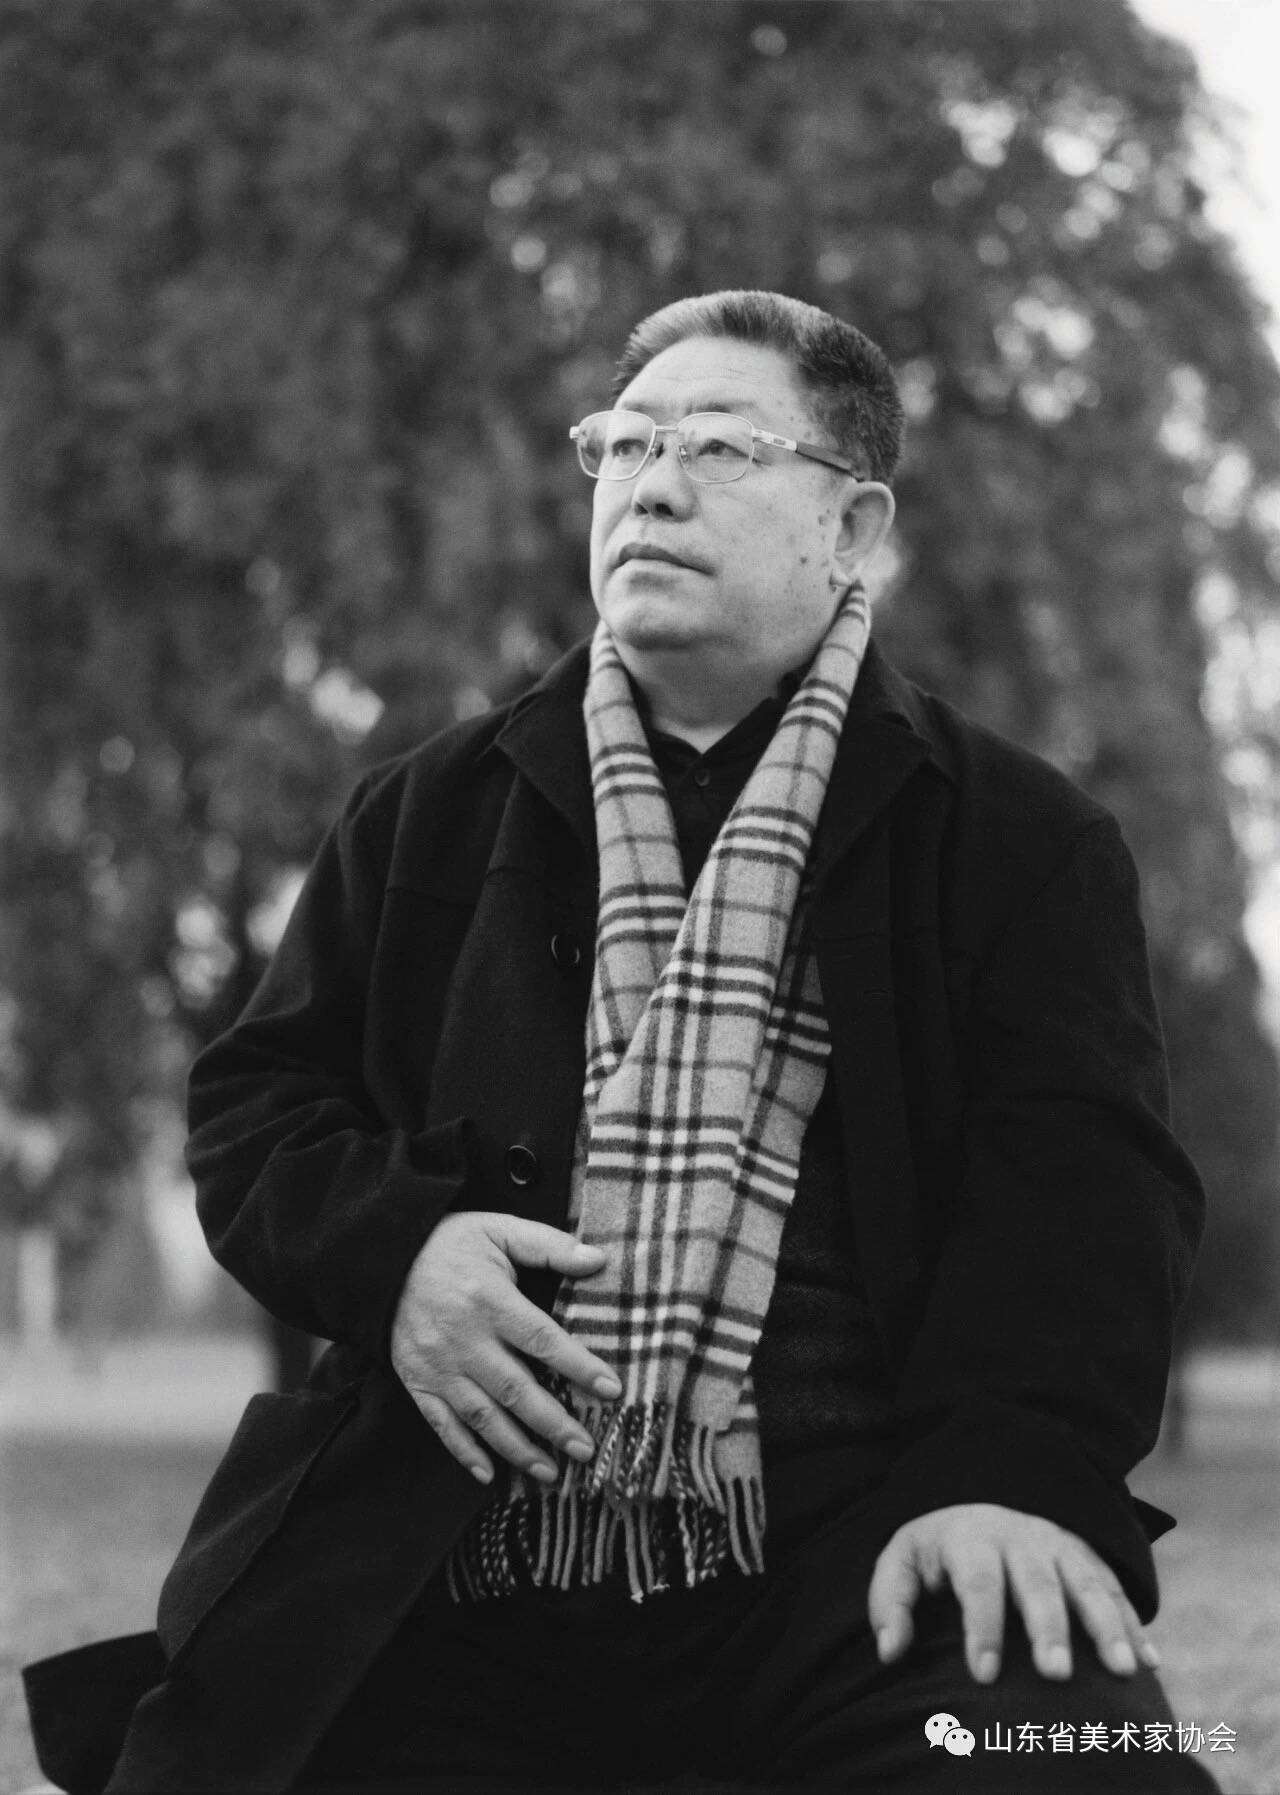 沉痛缅怀著名画家刘宝纯先生！1月21日因病于济南逝世 享年92岁